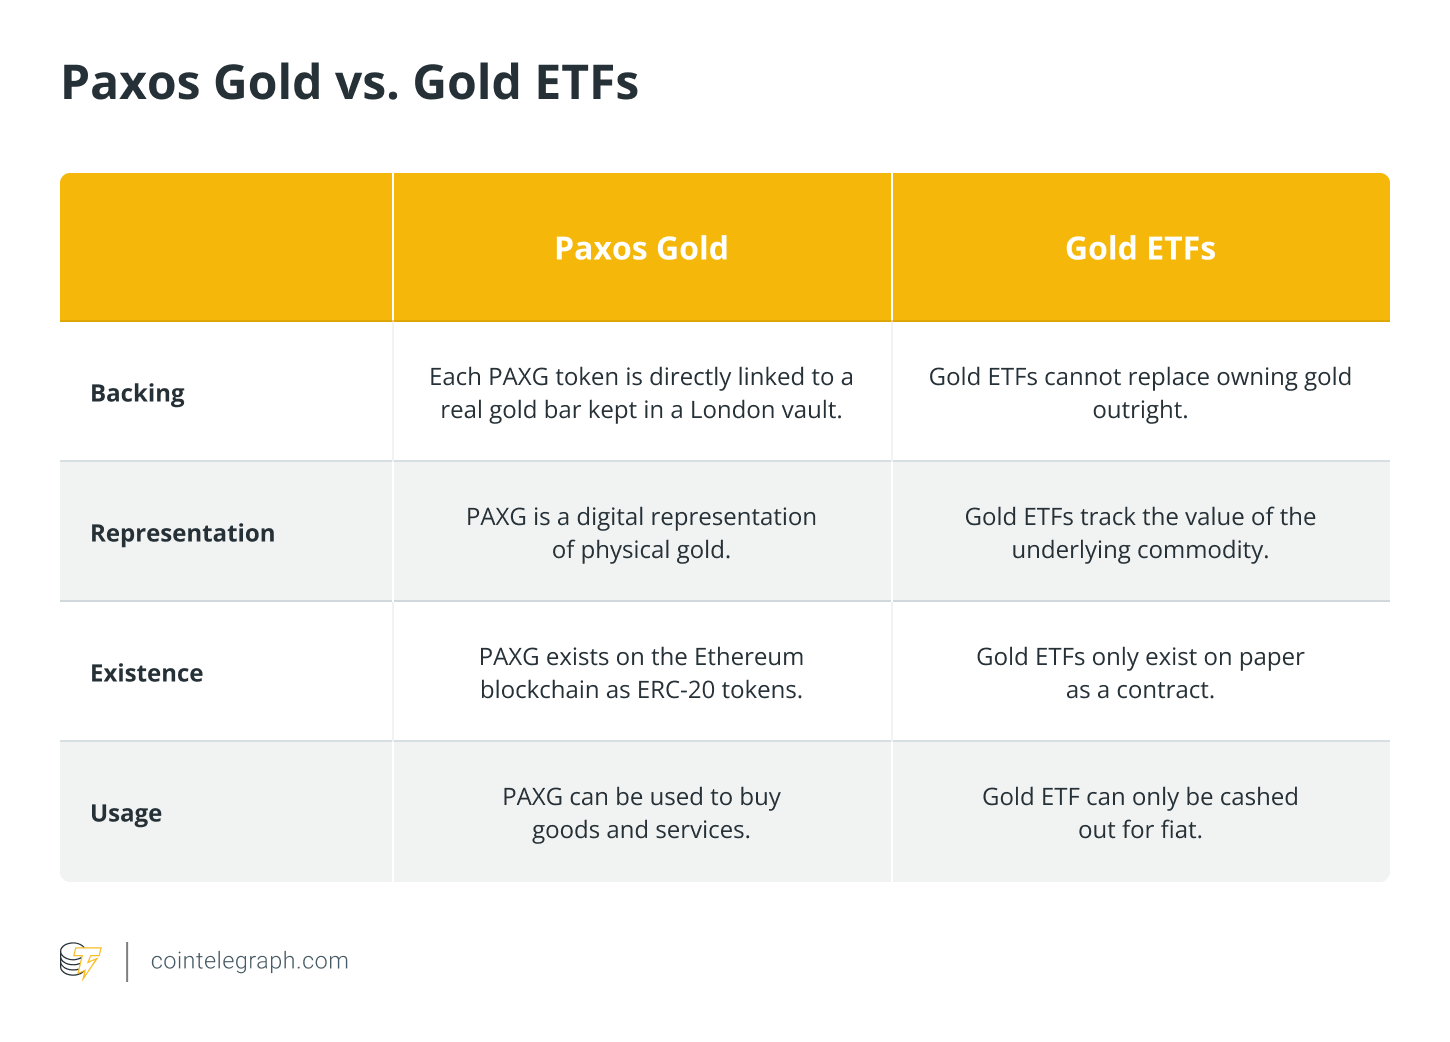 Paxos Gold vs Gold ETFs